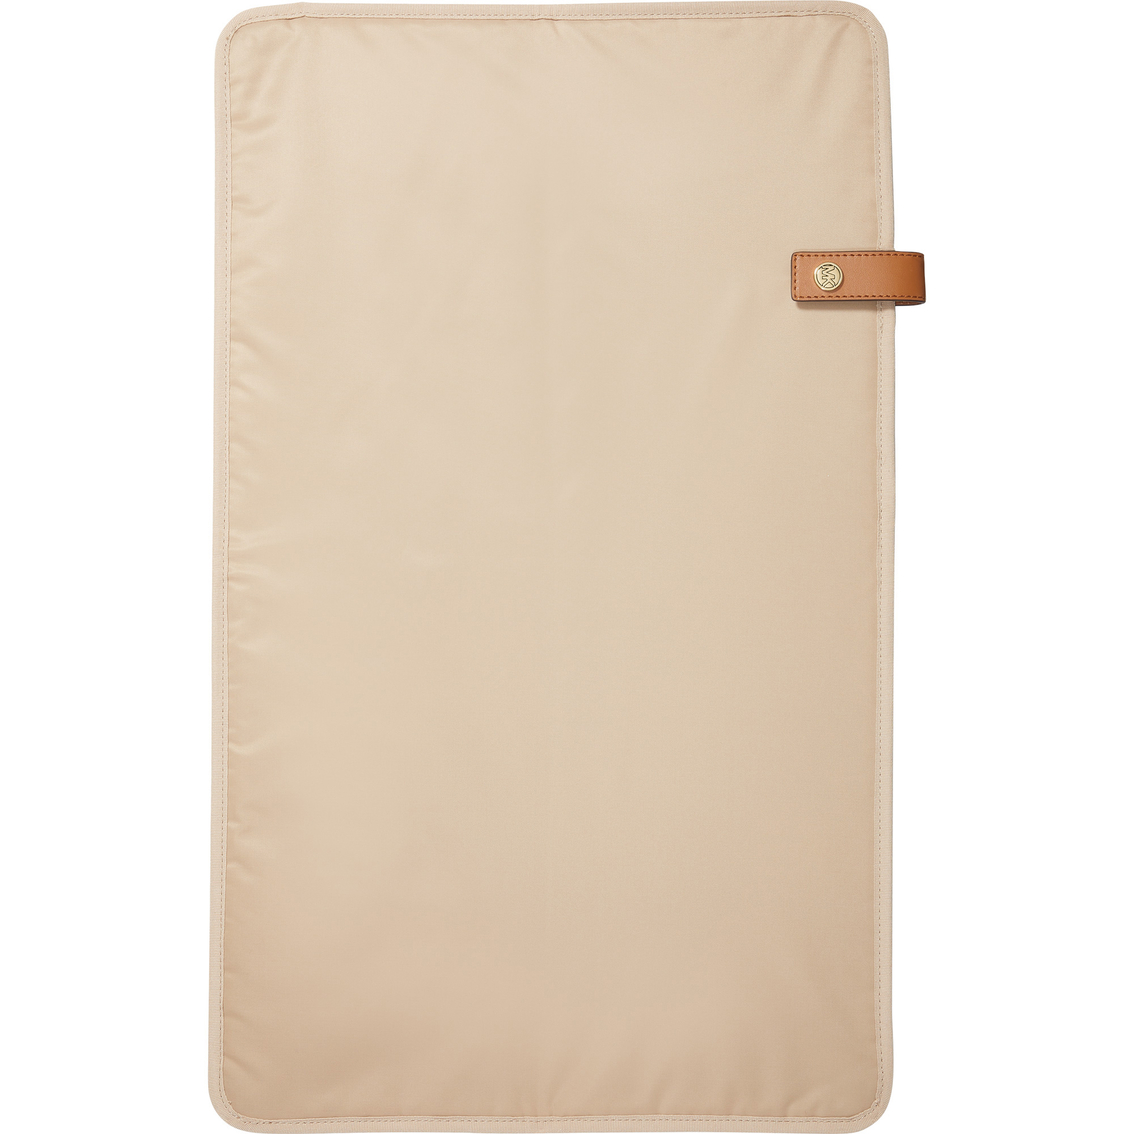 Michael Kors Travel Large Diaper Bag - Image 5 of 5